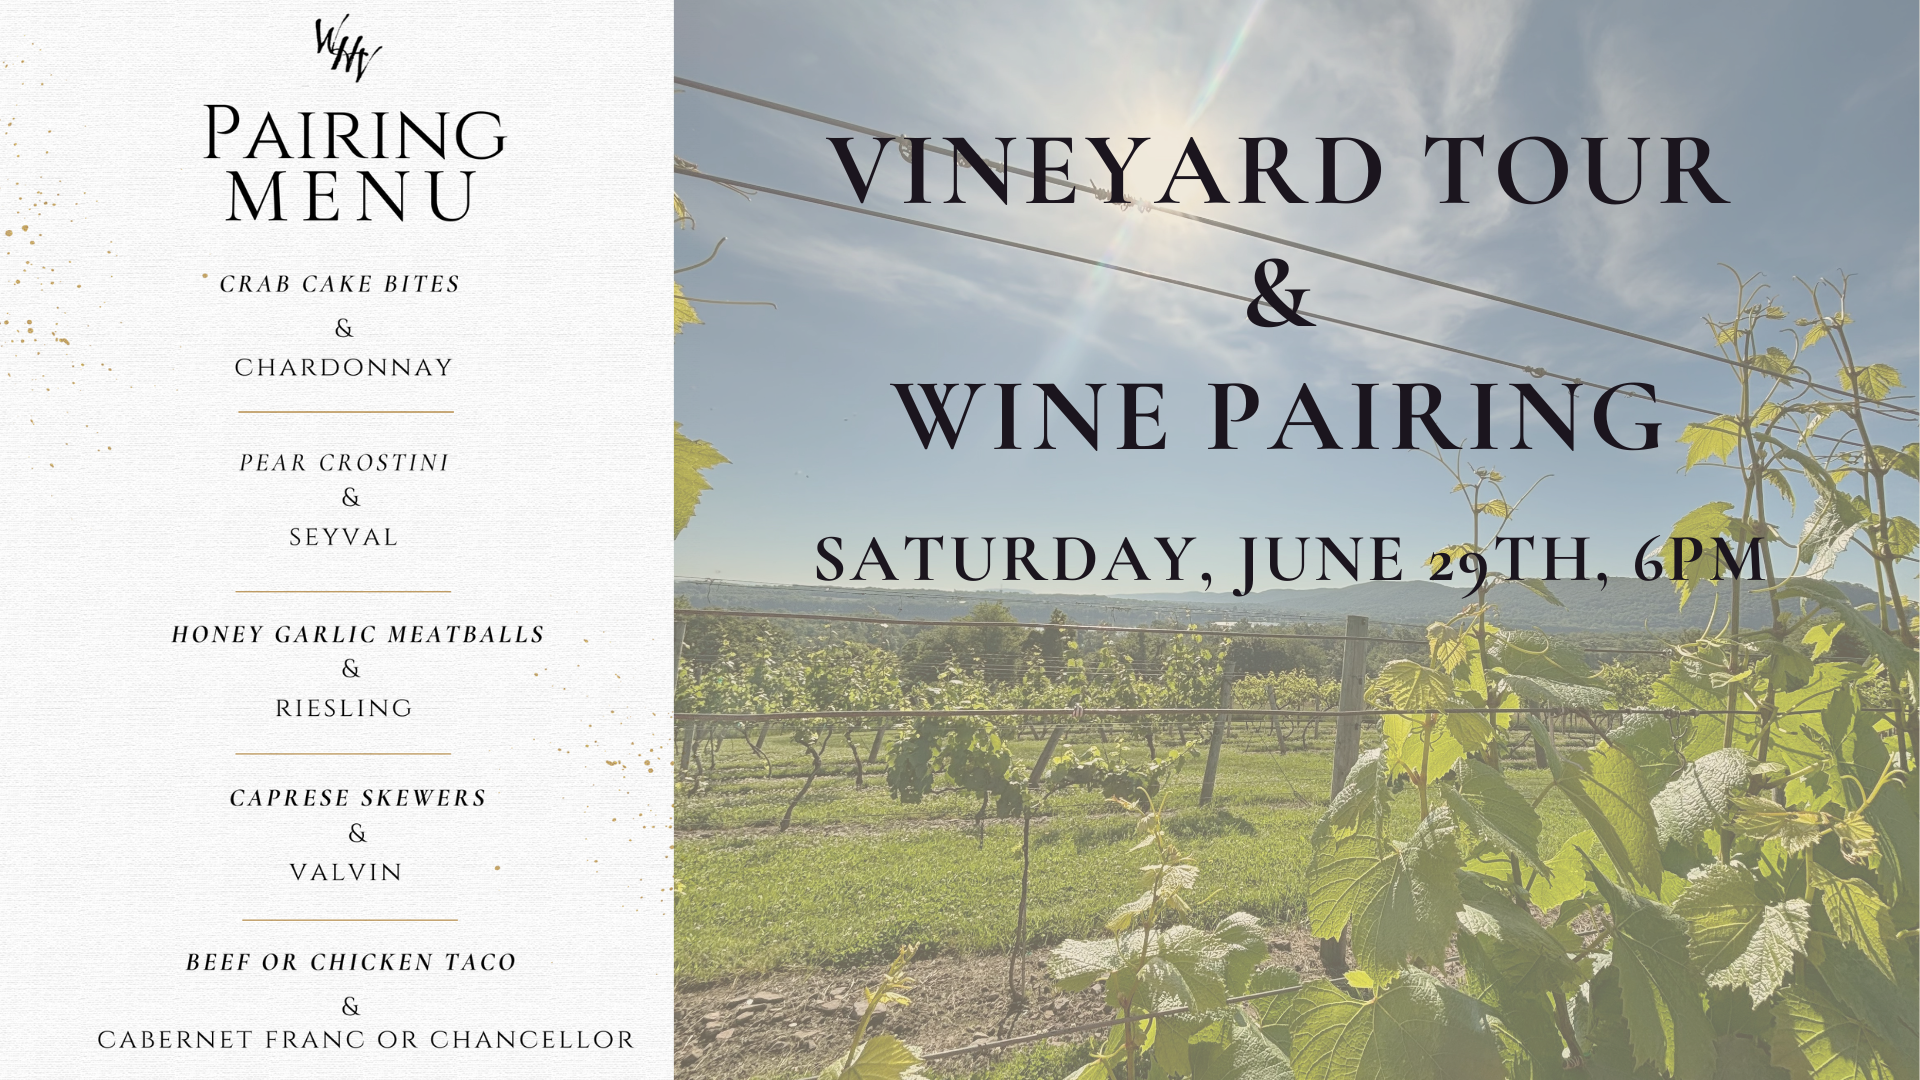 Vineyard Tour & Wine Pairing!